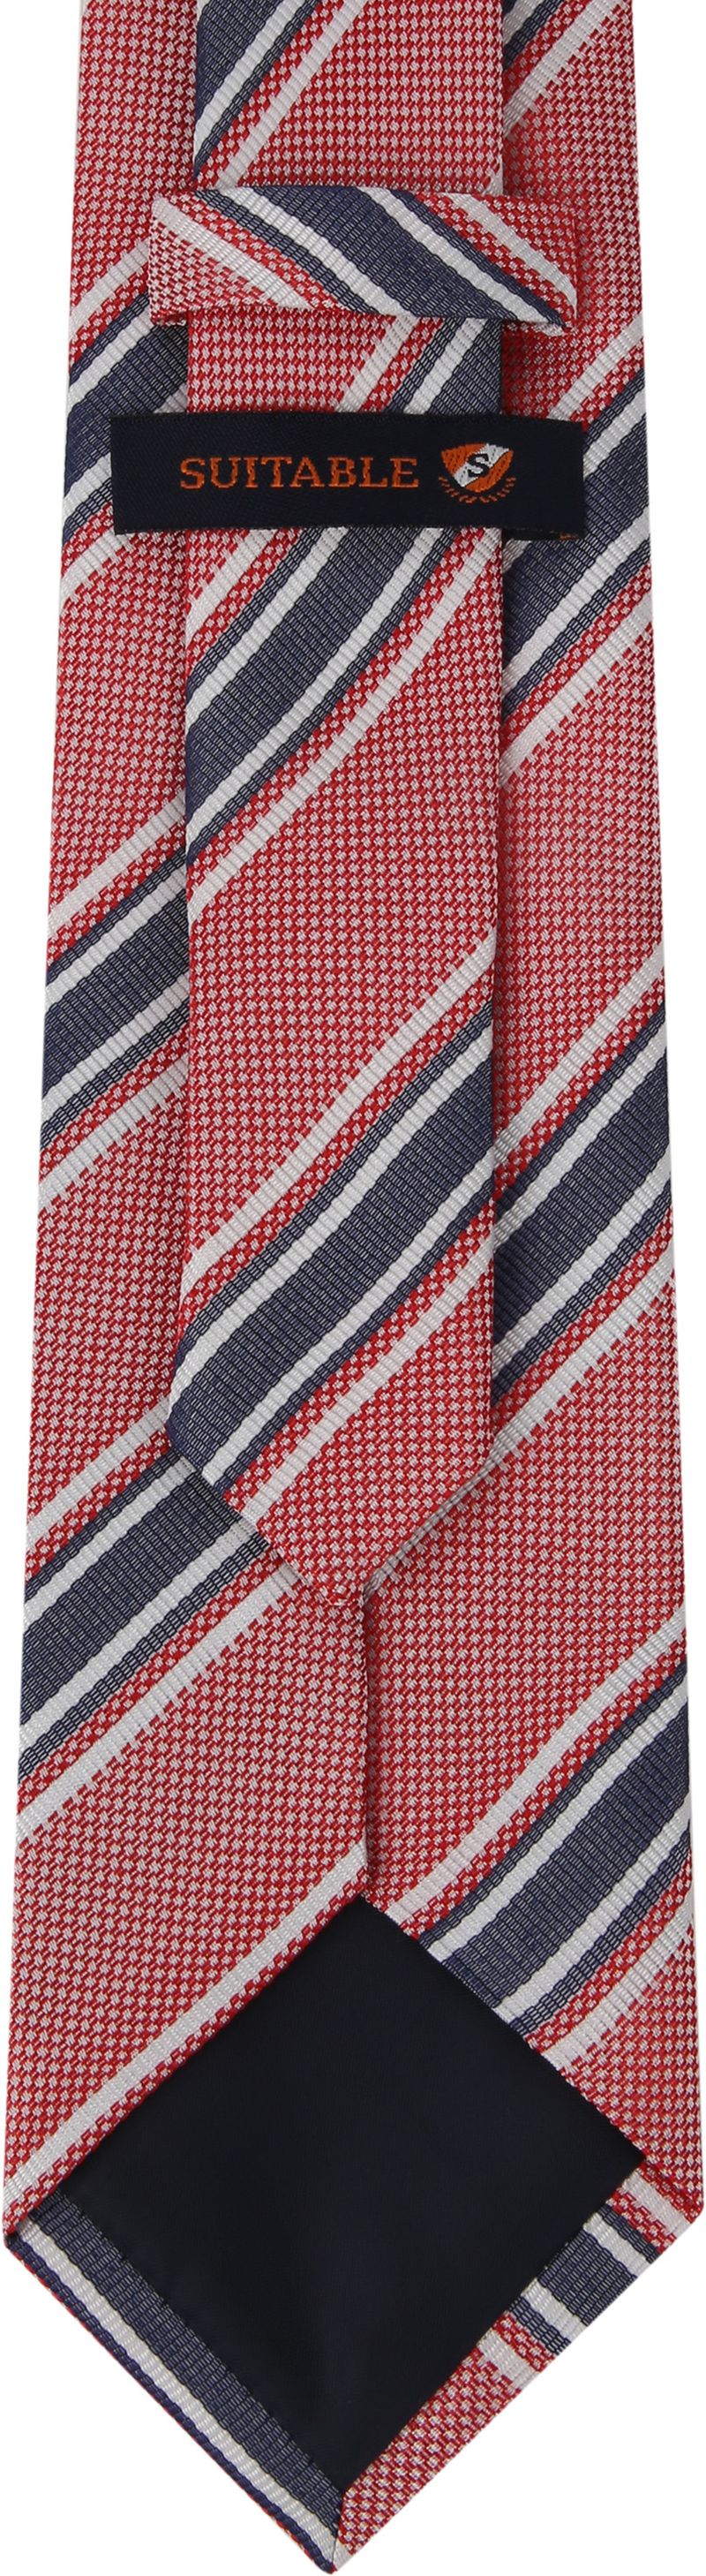 Suitable Krawatte Seide Streifen F91-10 - günstig online kaufen